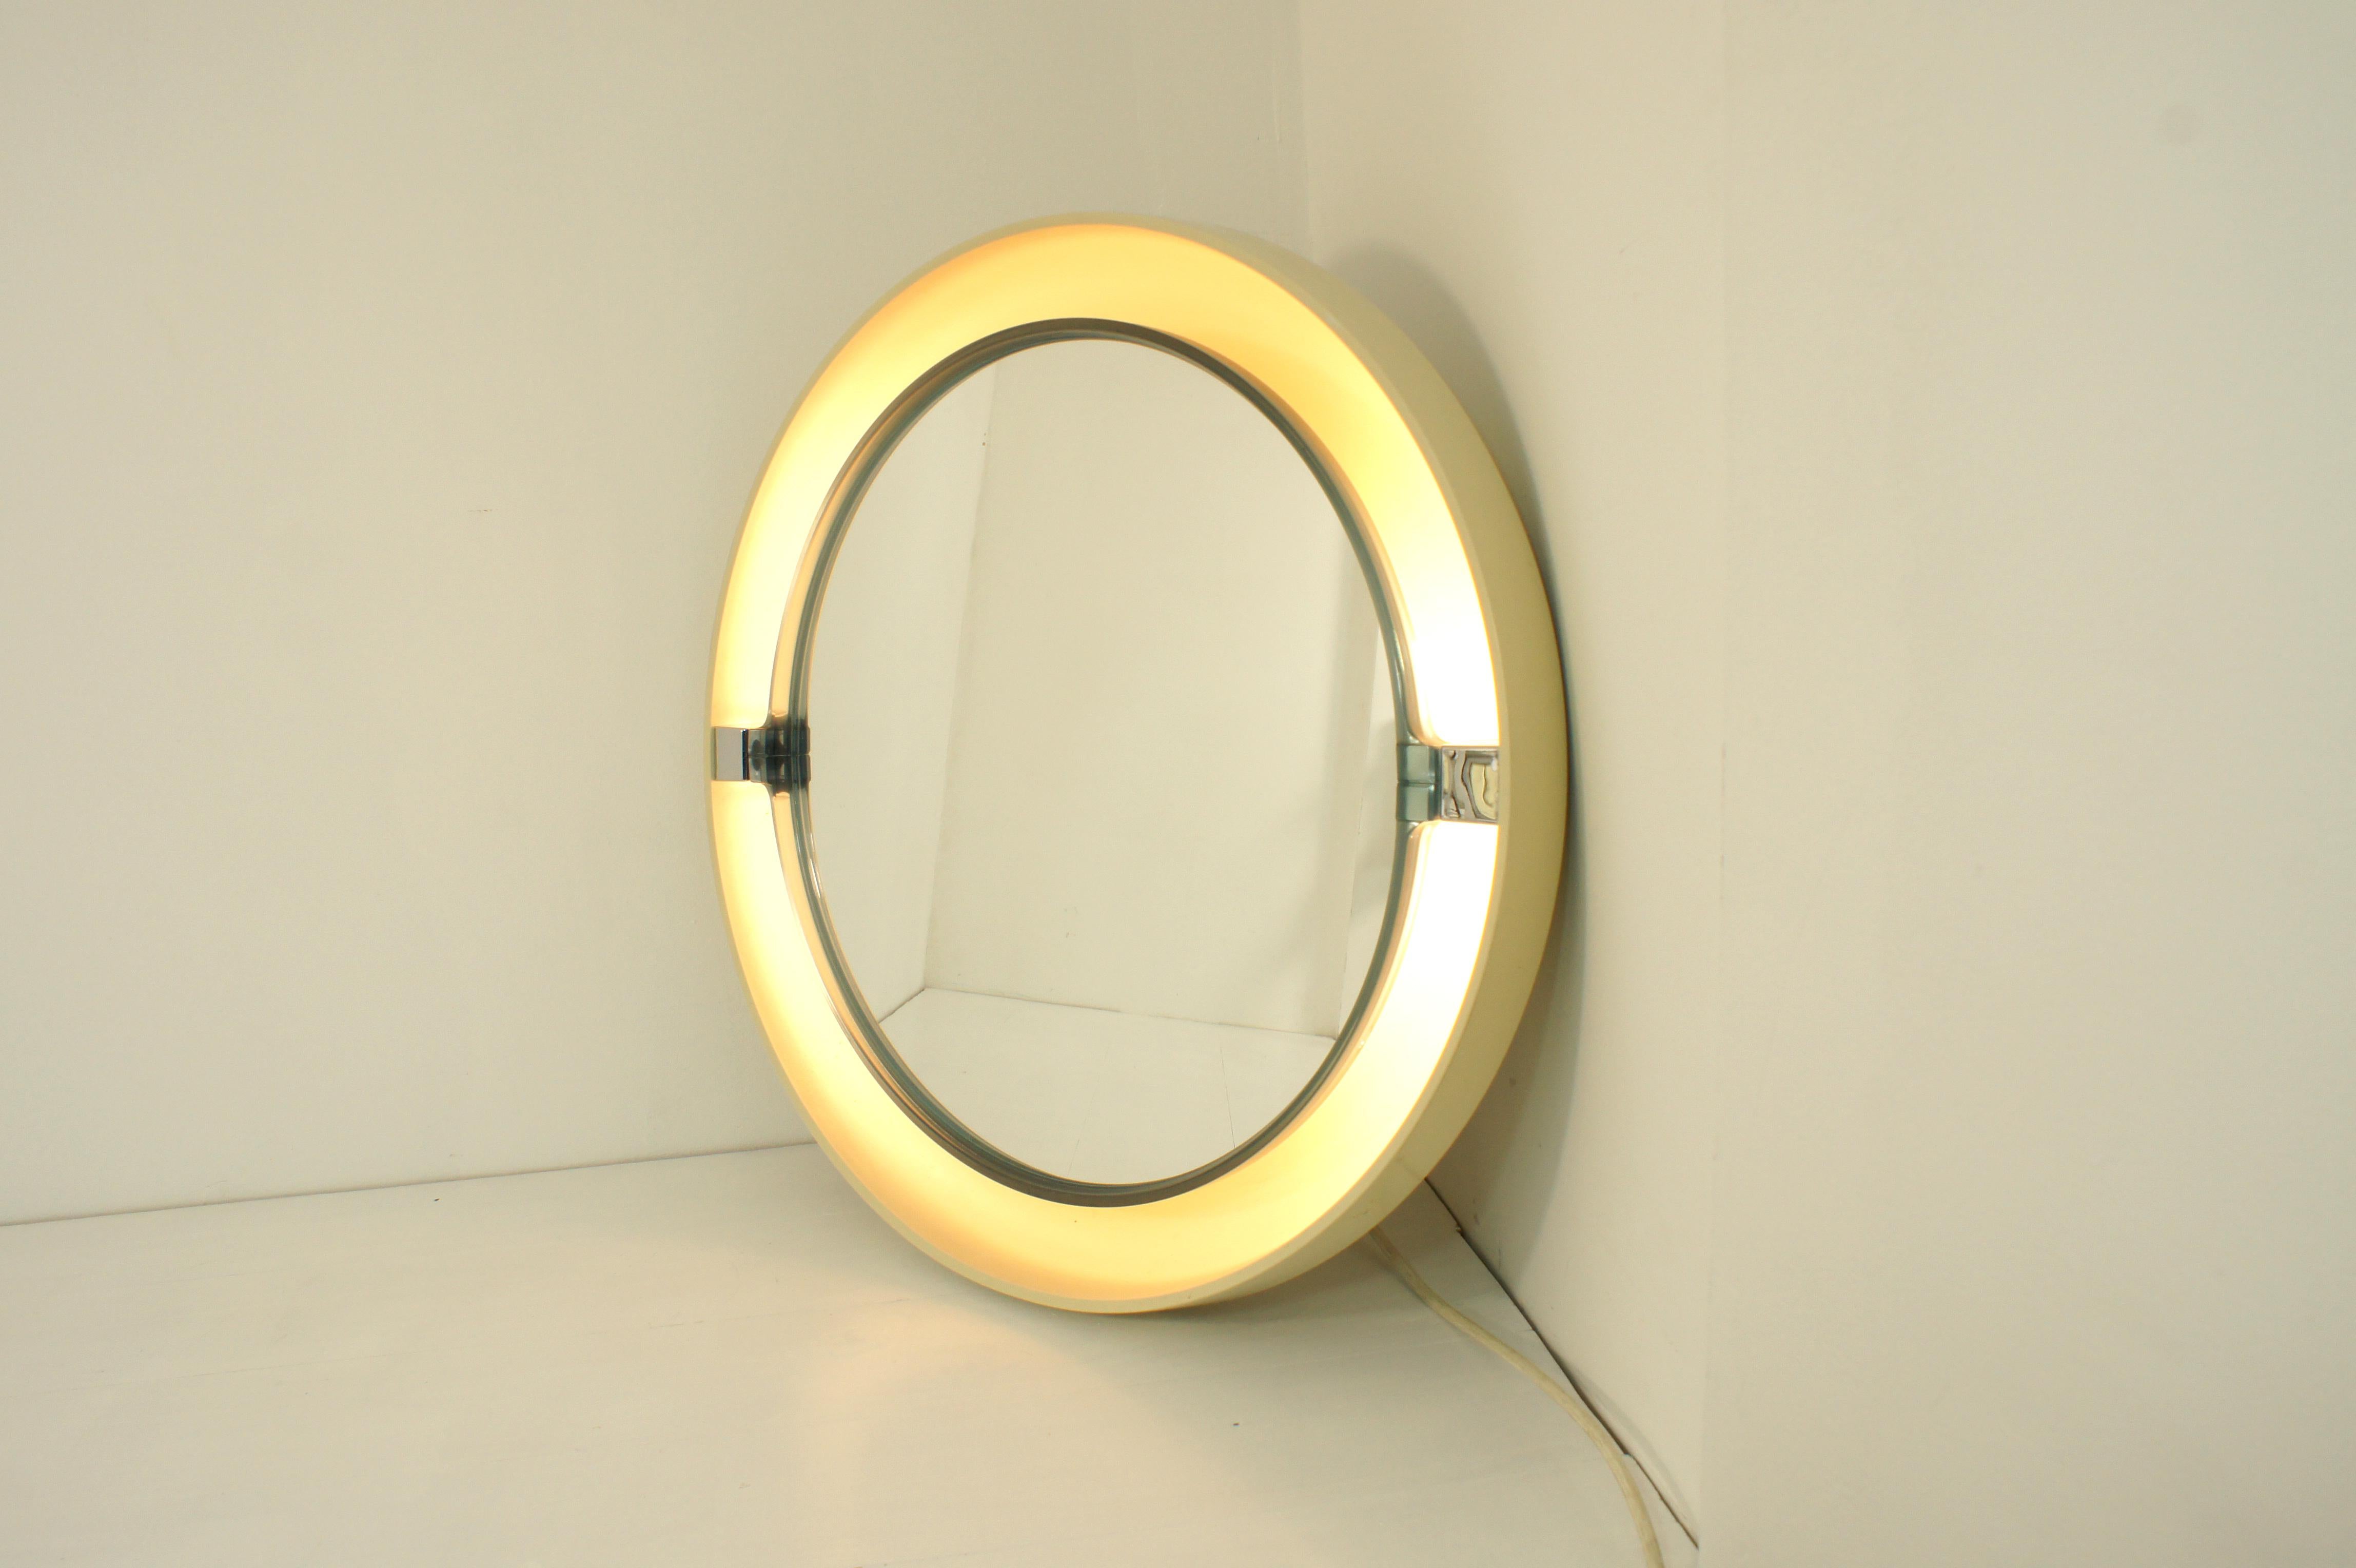 Kippspiegel mit Hintergrundbeleuchtung, hergestellt in den 1970er Jahren von Allibert, Deutschland.

Weiße Abs-Schale, auf der ein halbtransparenter blauer Kipprahmen montiert ist, in dem der Spiegel enthalten ist.

Zwischen Spiegel und Gehäuse